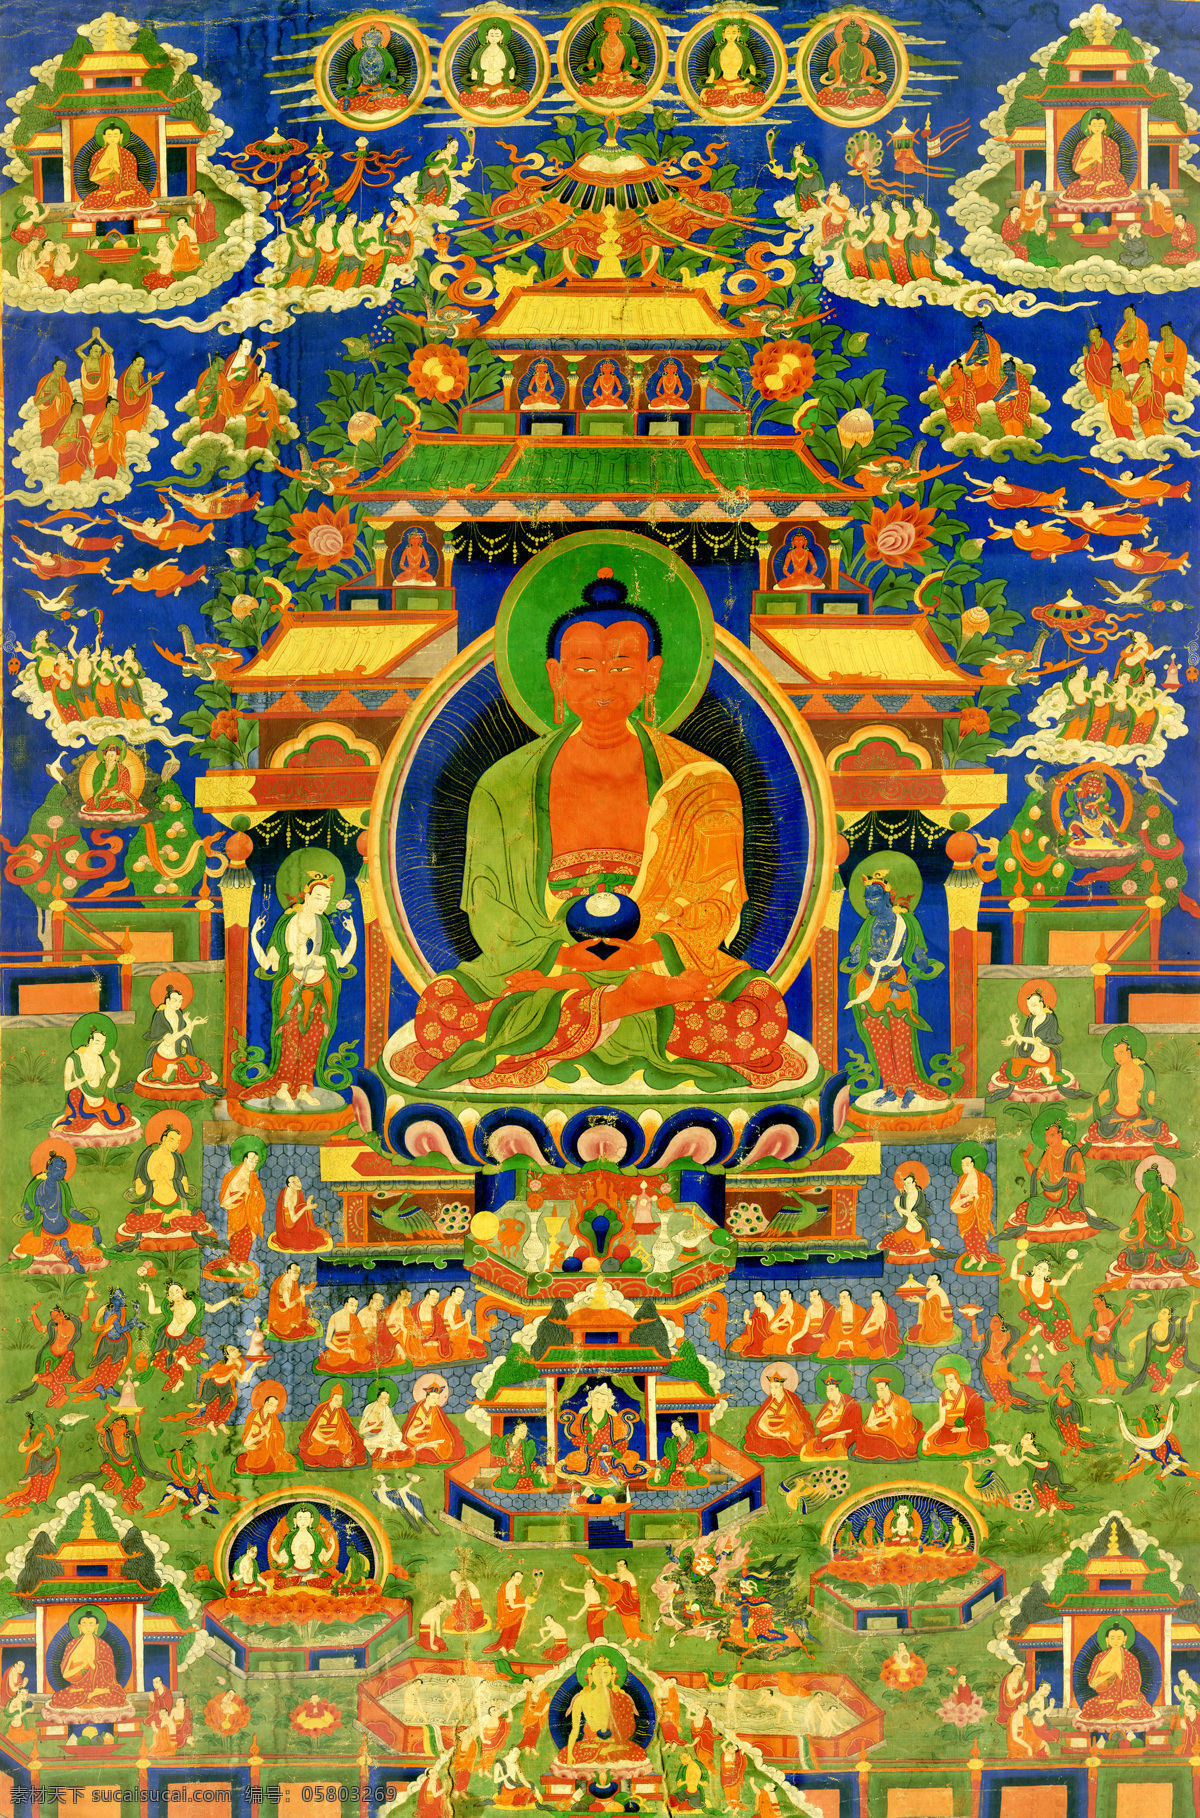 唐卡 佛教 藏传佛教 佛 宗教 宗教信仰 菩萨 西藏 民族 工艺 花纹 极乐世界 绘画 艺术 绘画书法 文化艺术